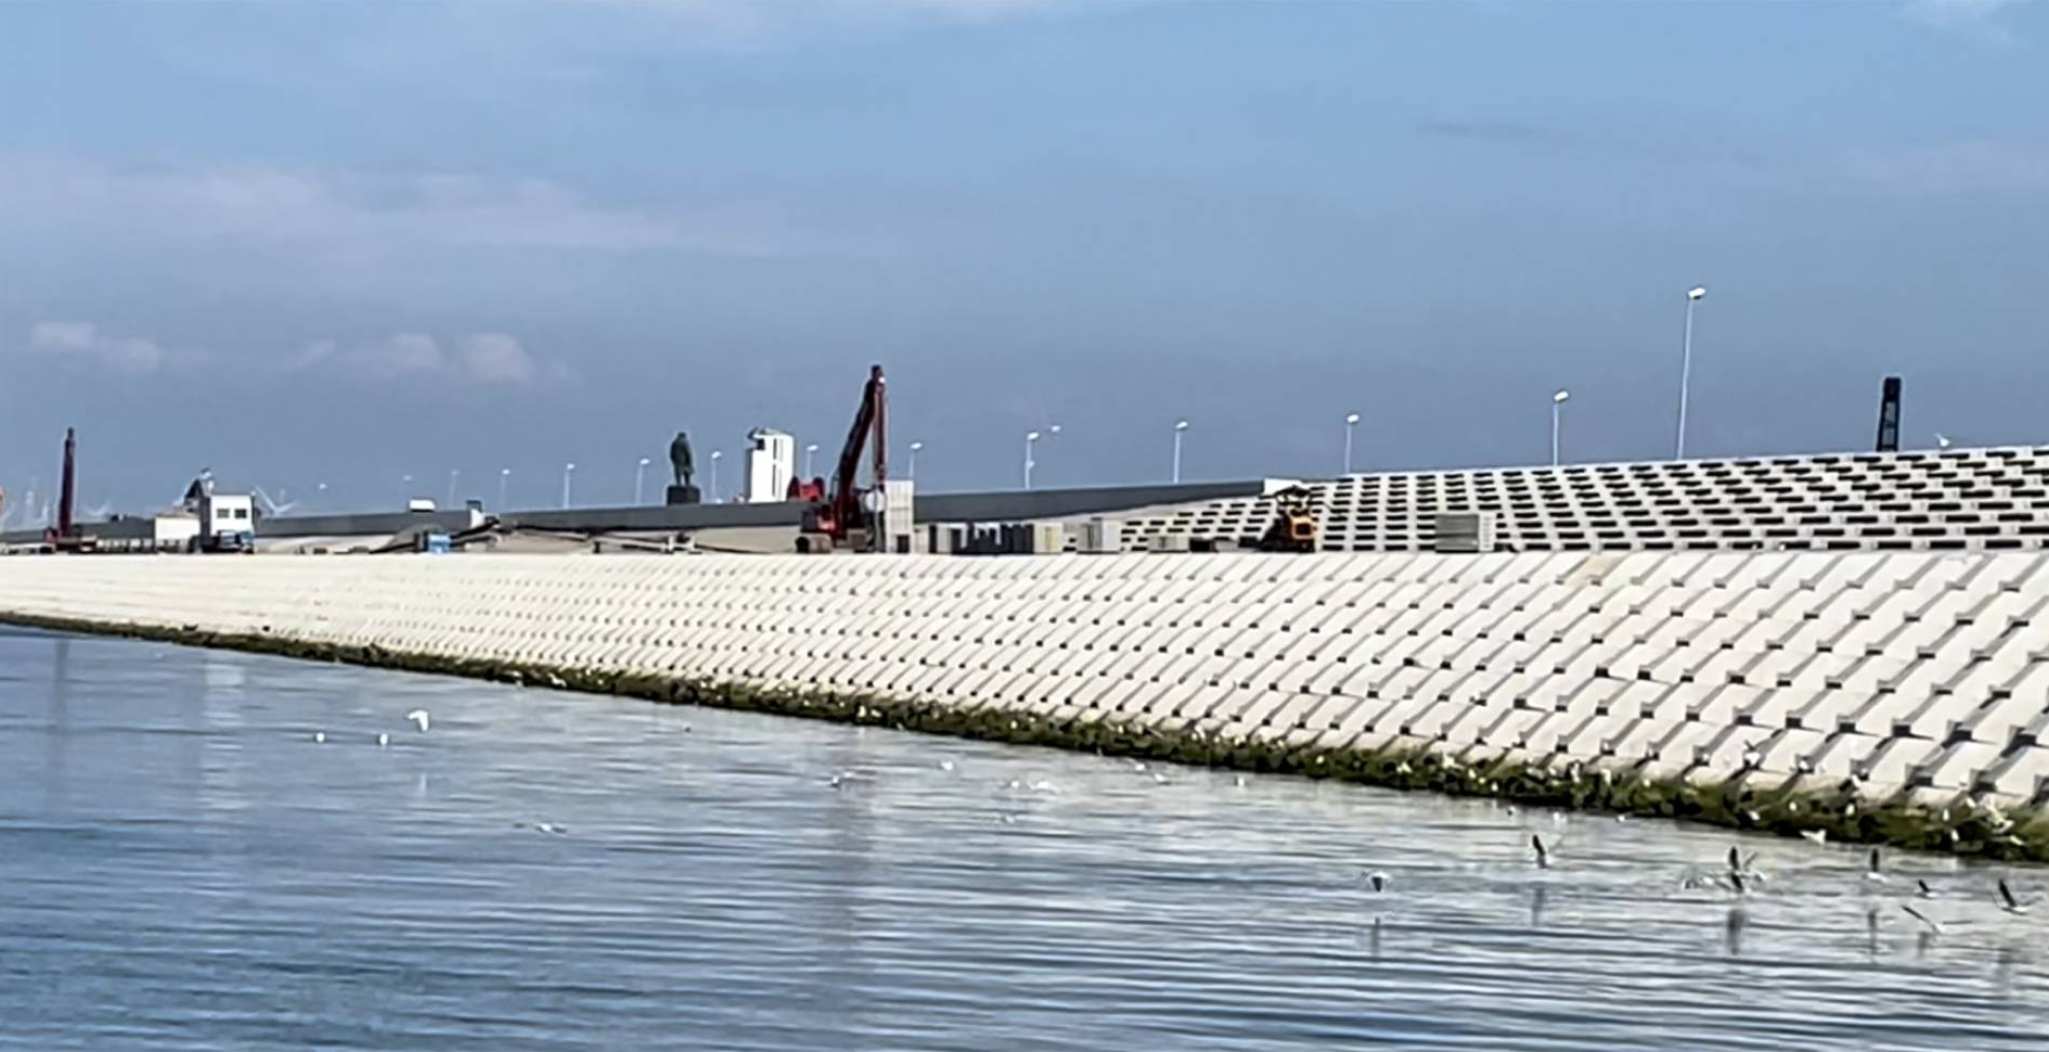 Betonnen quattroblocks verstevigen de wadzijde van de Afsluitdijk